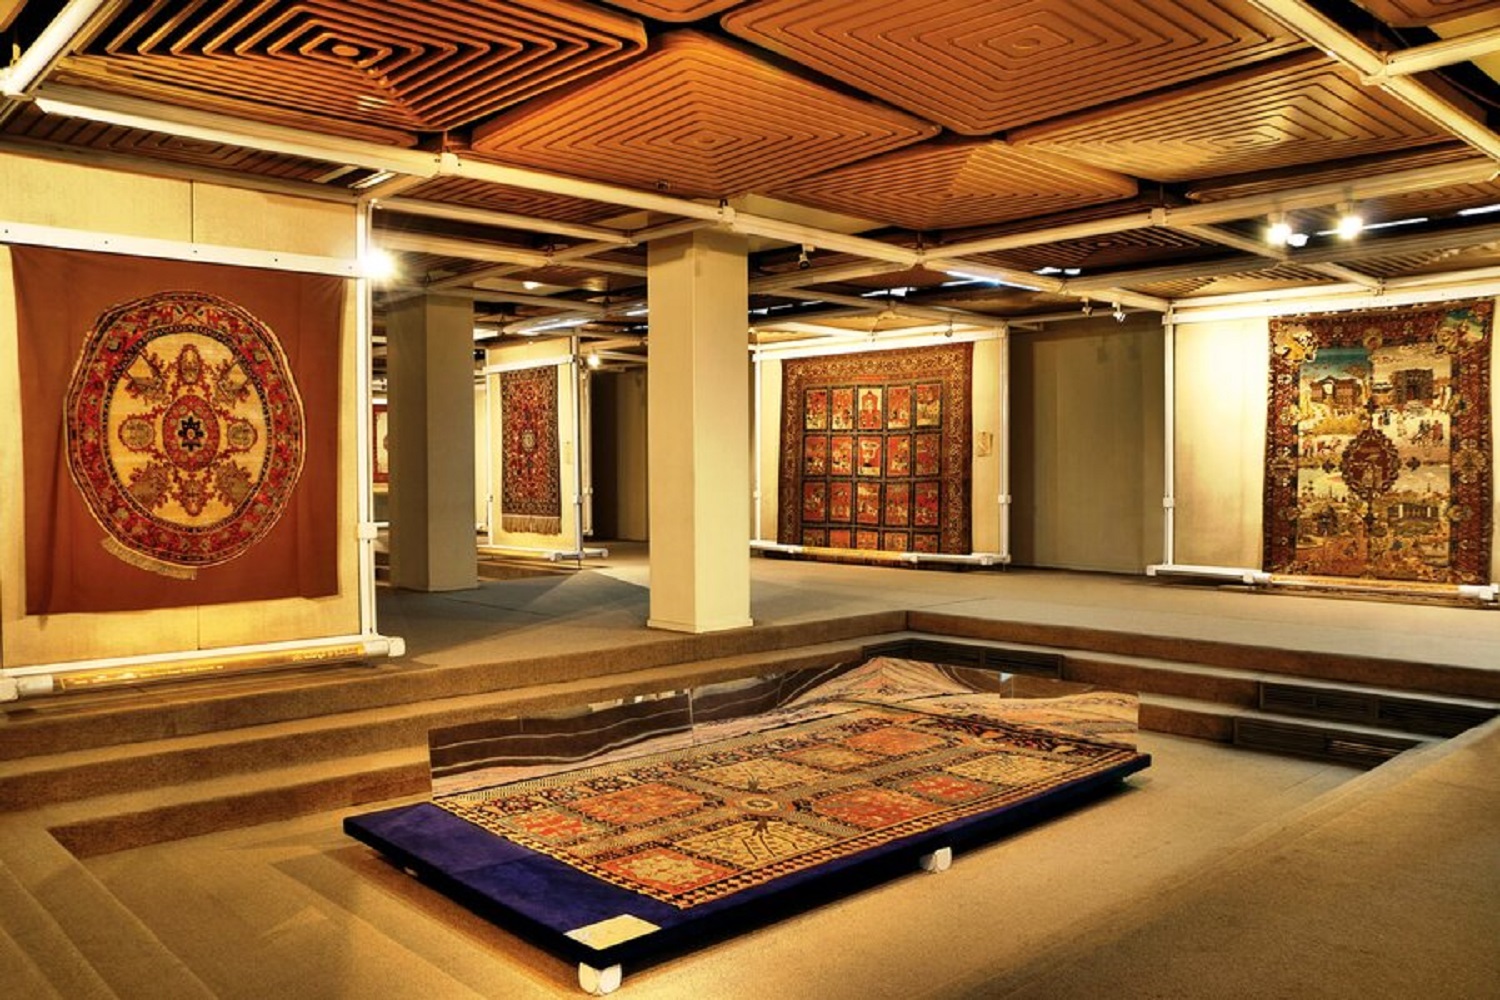 نمایشگاه مجازی طرح و نقش قالی در موزه فرش برگزار شد